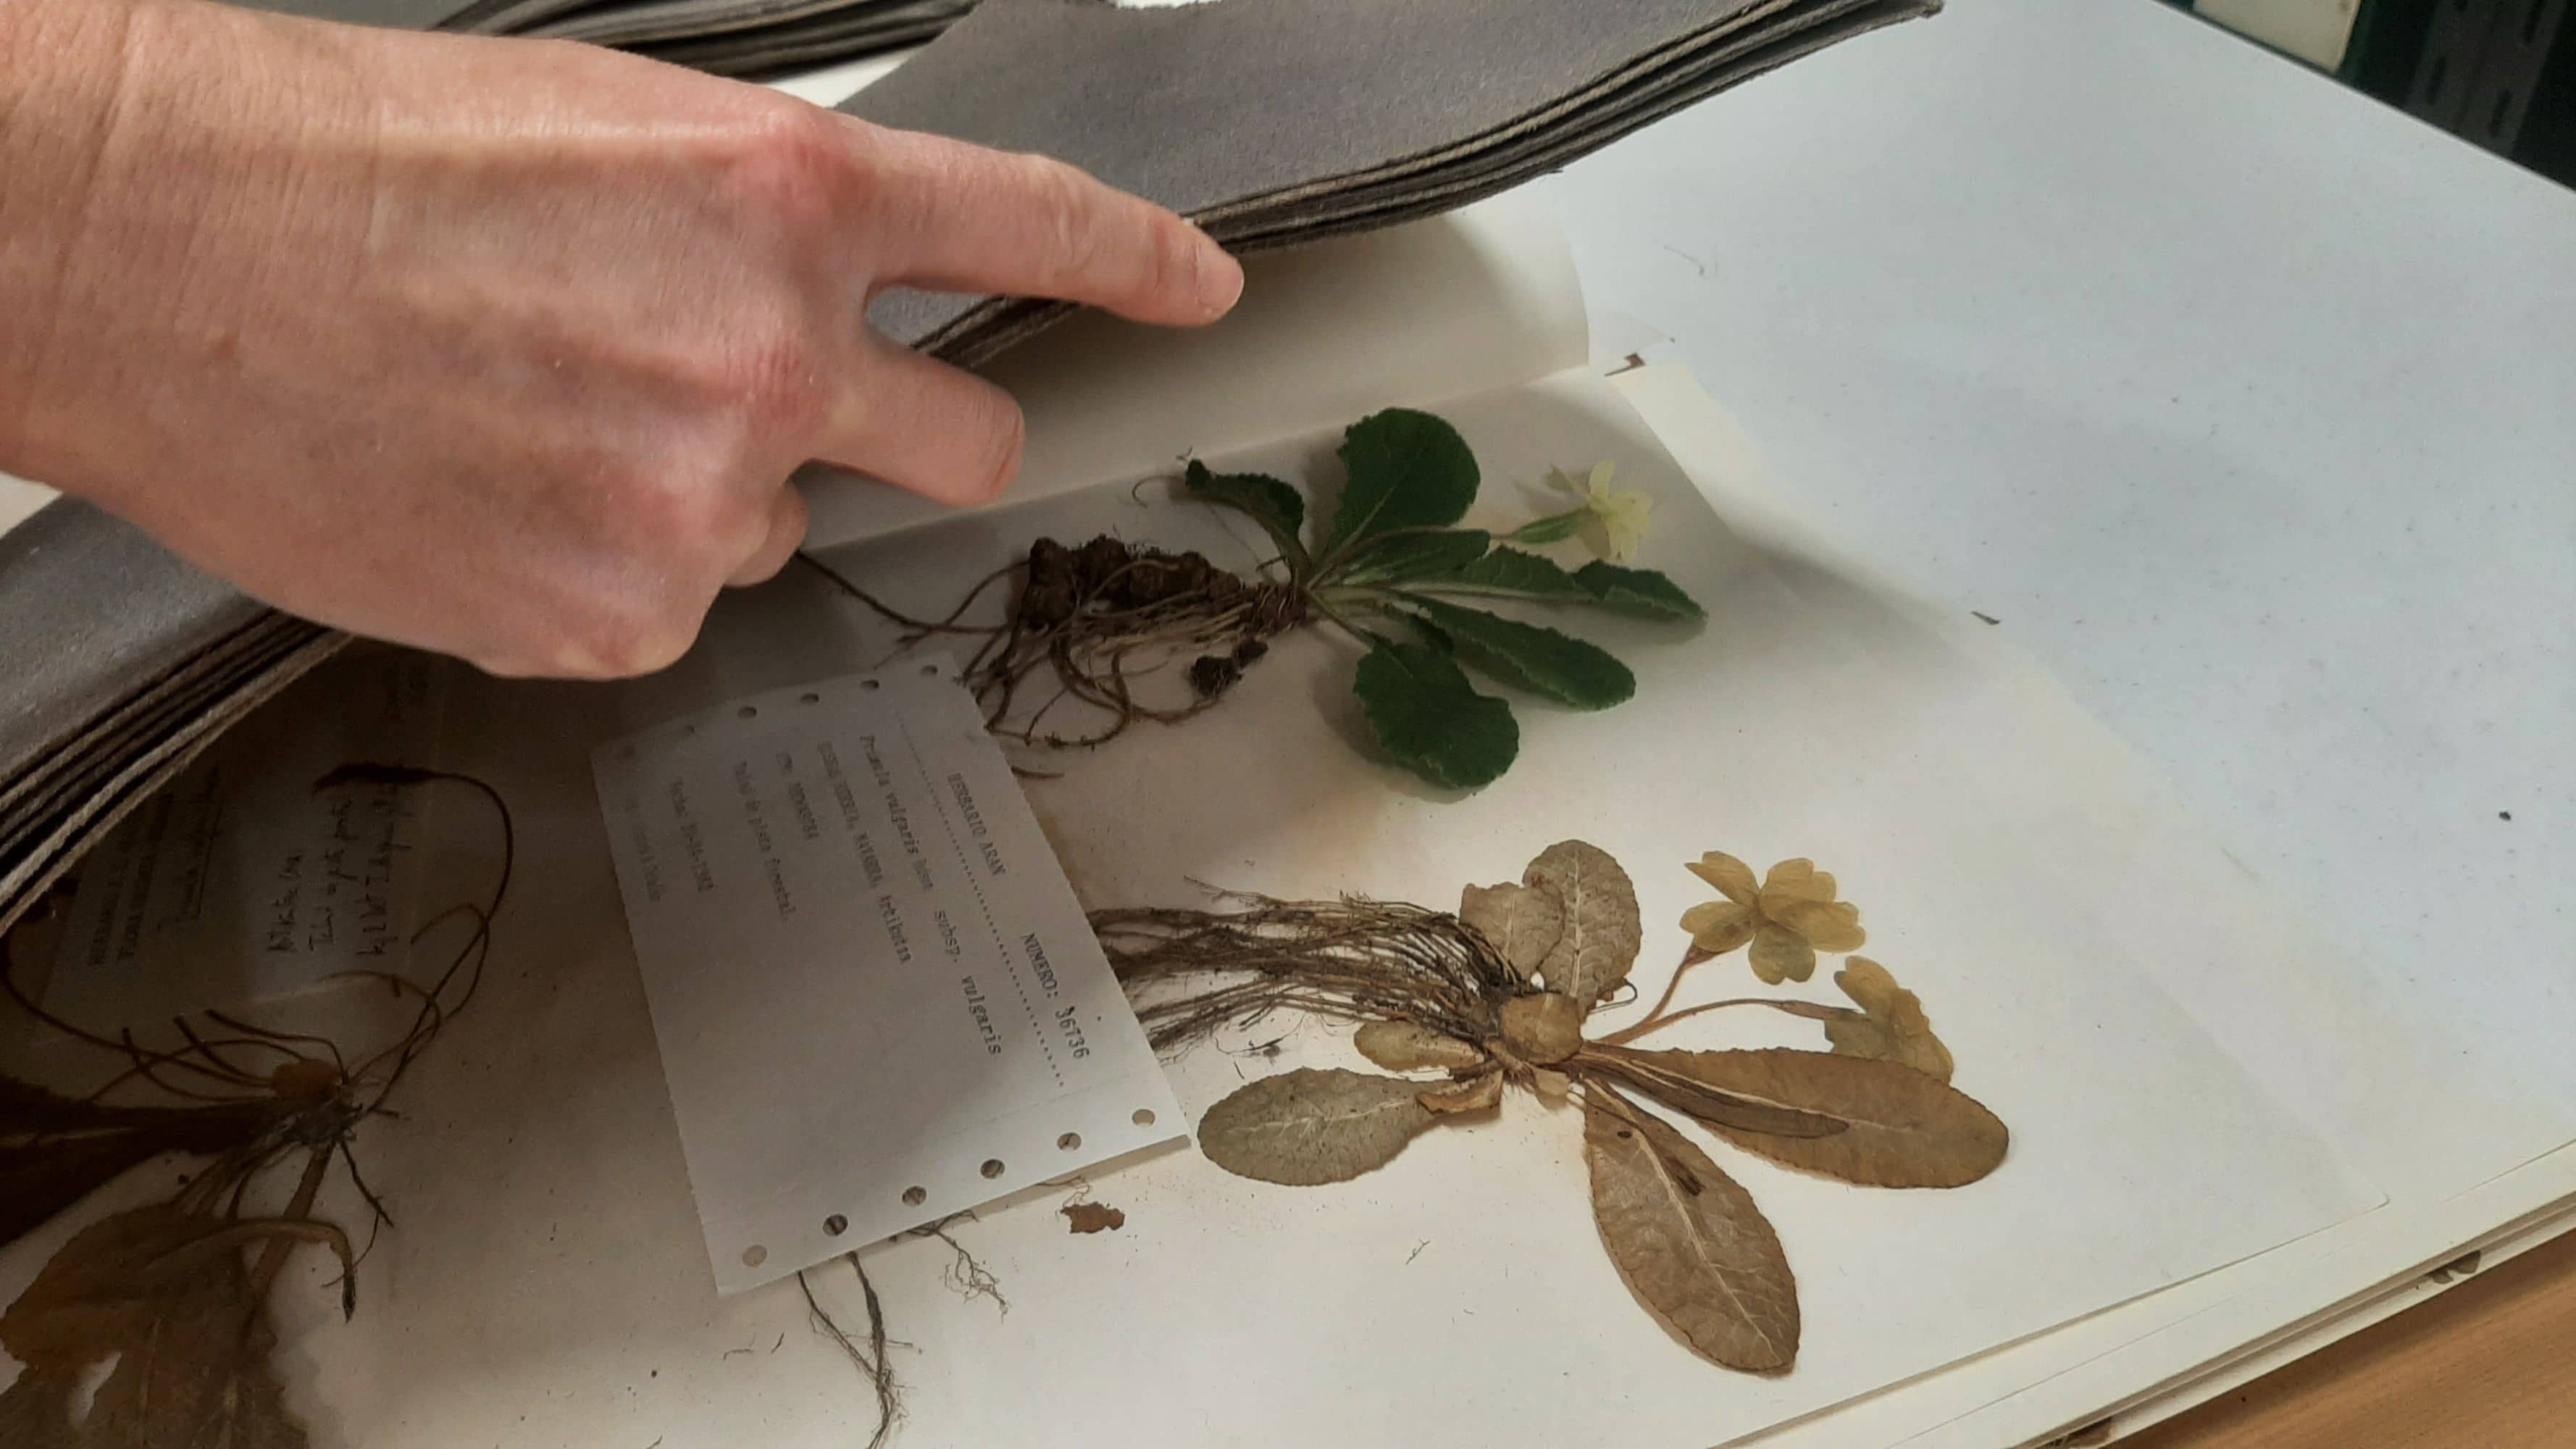 Las hojas de papel con planta se rodean con cojines absorbentes, o con un conjunto de hojas de periódico.